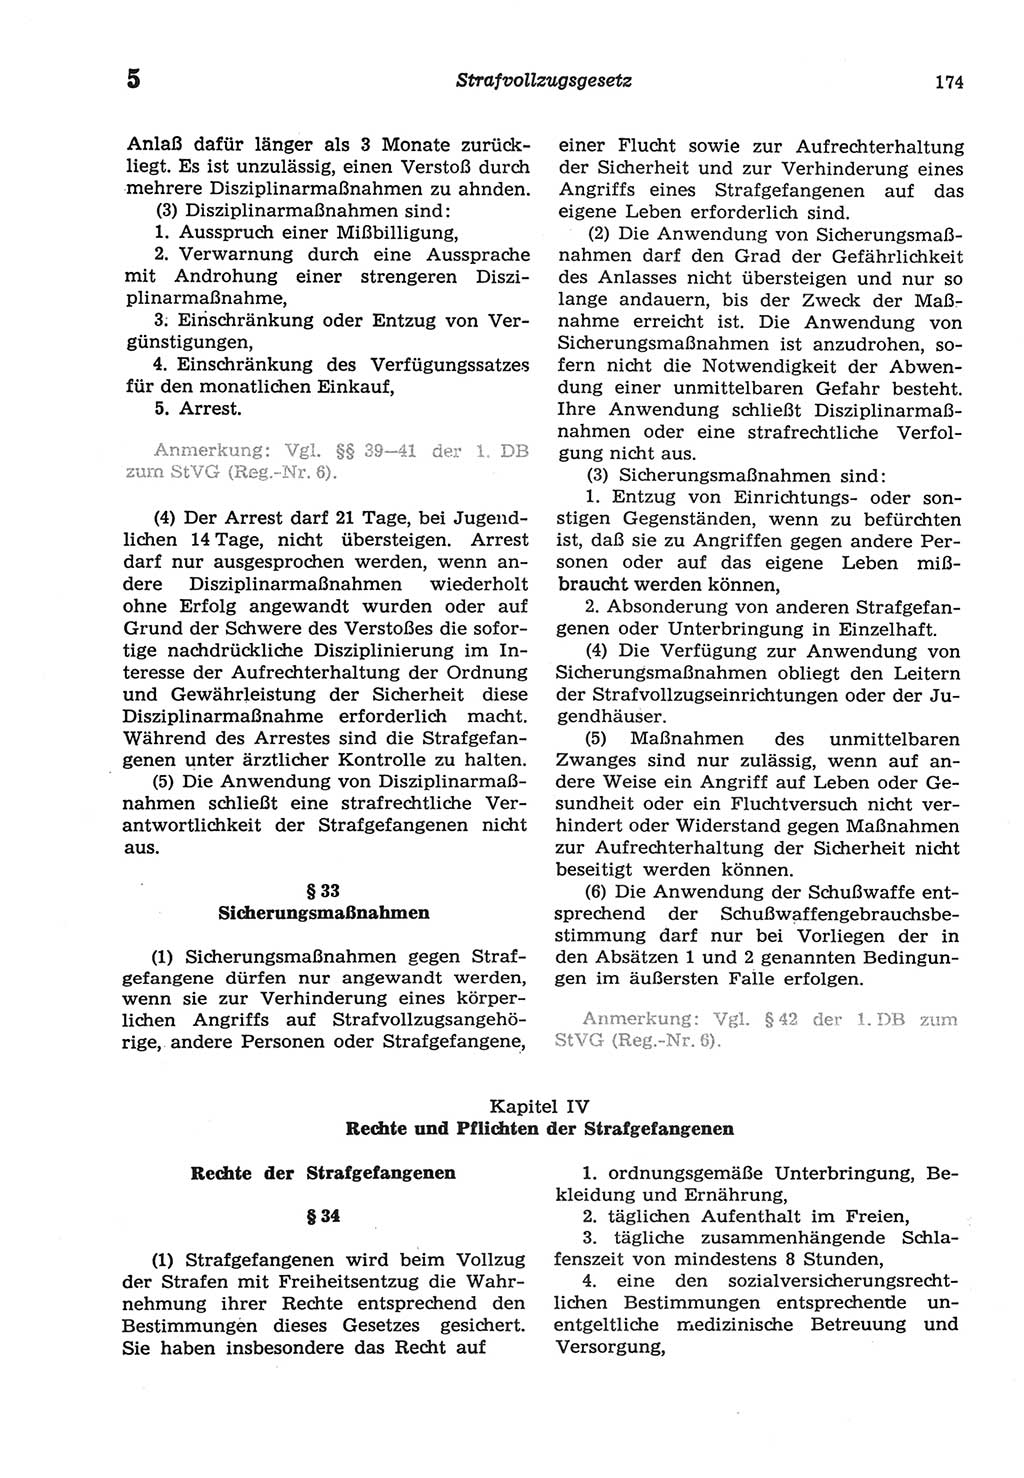 Strafprozeßordnung (StPO) der Deutschen Demokratischen Republik (DDR) sowie angrenzende Gesetze und Bestimmungen 1977, Seite 174 (StPO DDR Ges. Best. 1977, S. 174)